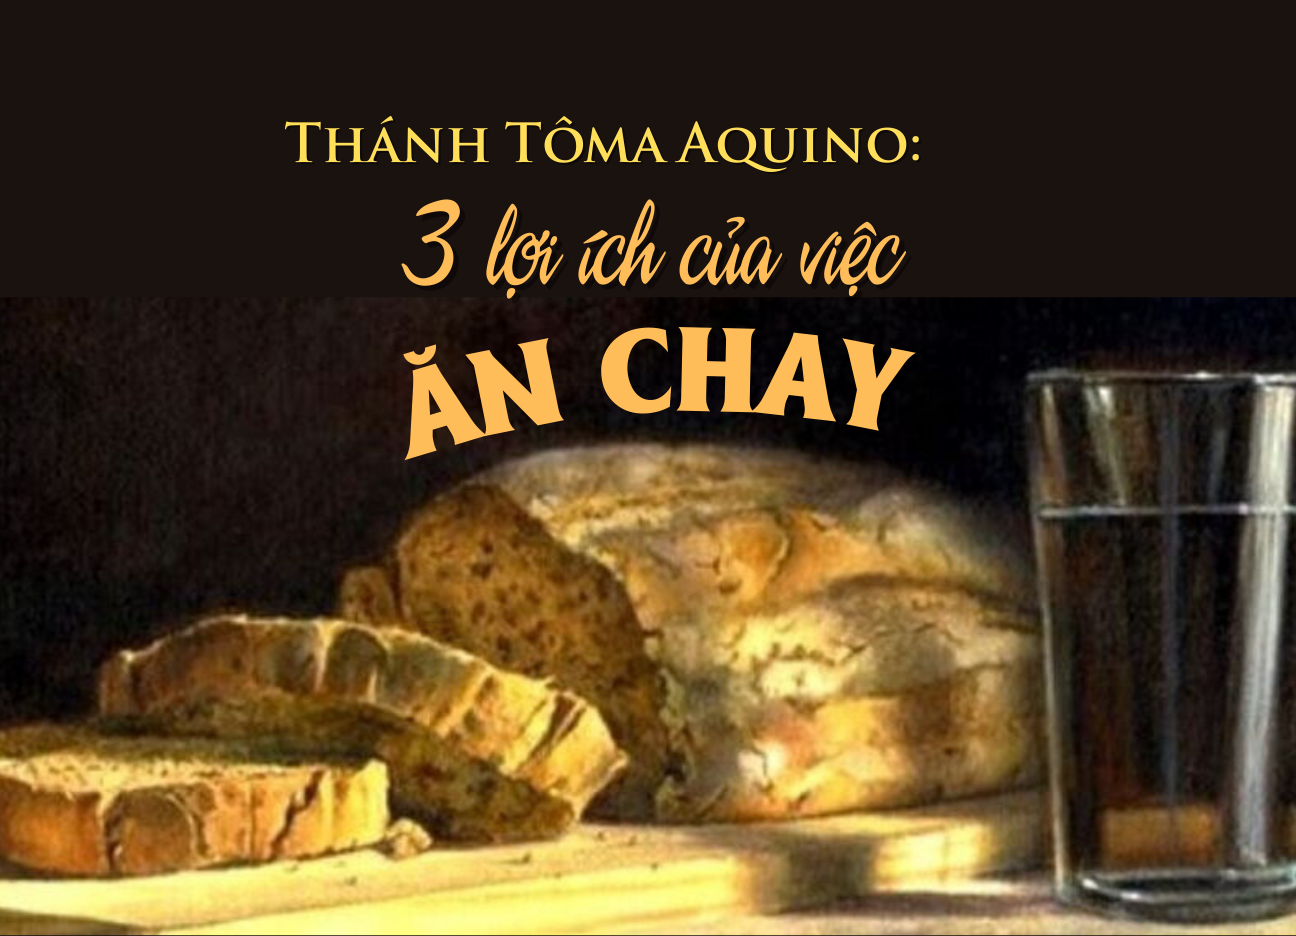 Ba lợi ích của việc ăn chay theo Thánh Tôma Aquino